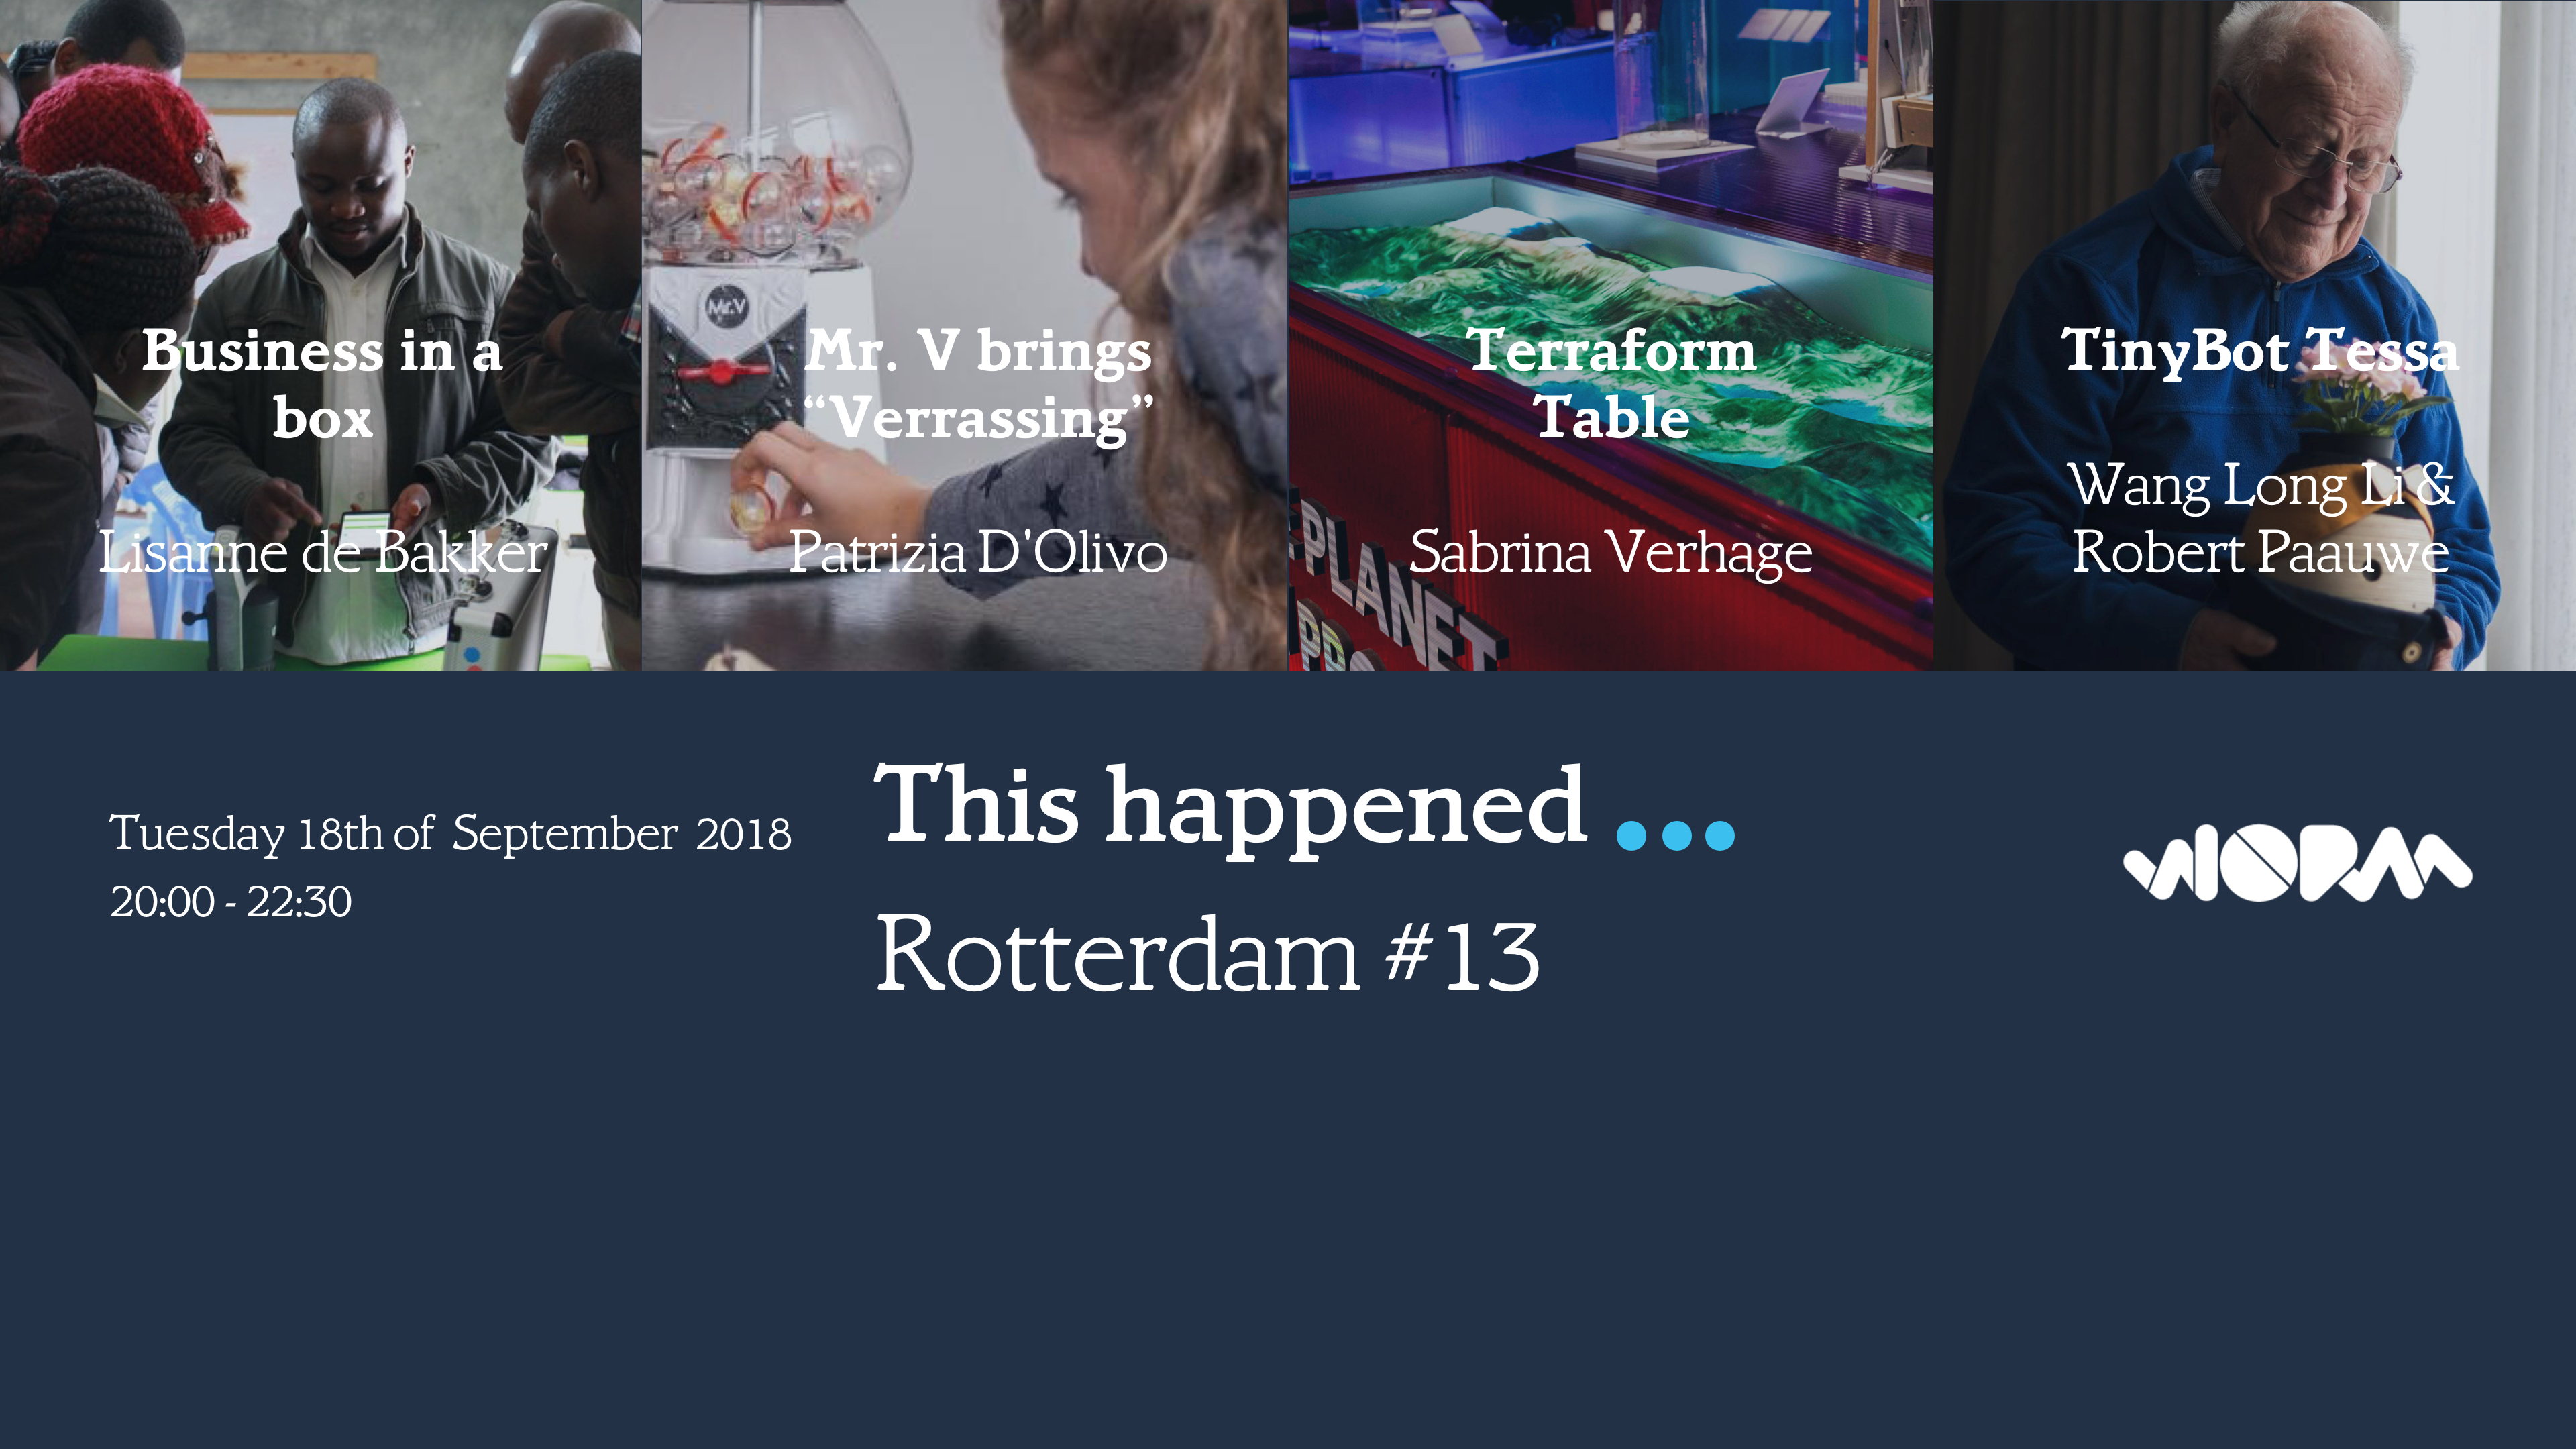 This happened Rotterdam #13